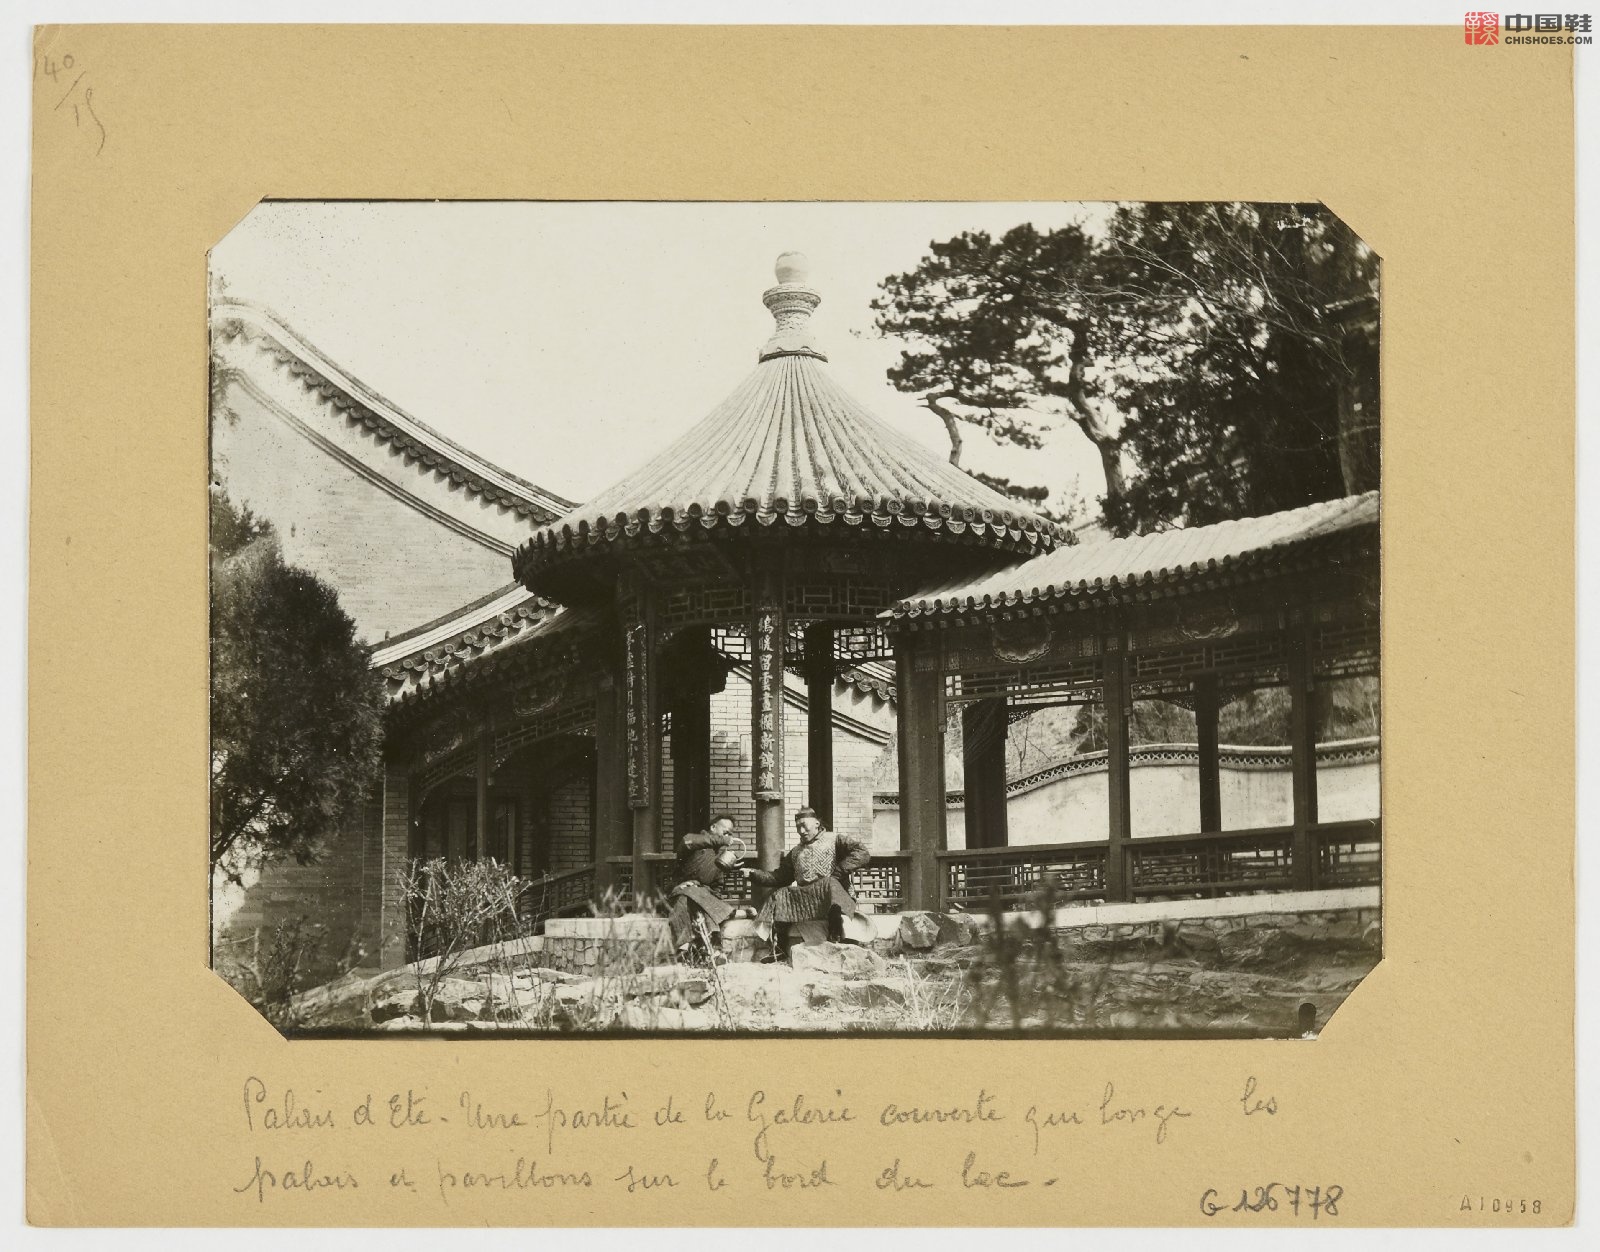 拉里贝的中国影像记录.415幅.By Firmin Laribe.1900-1910年_Page_253.jpg